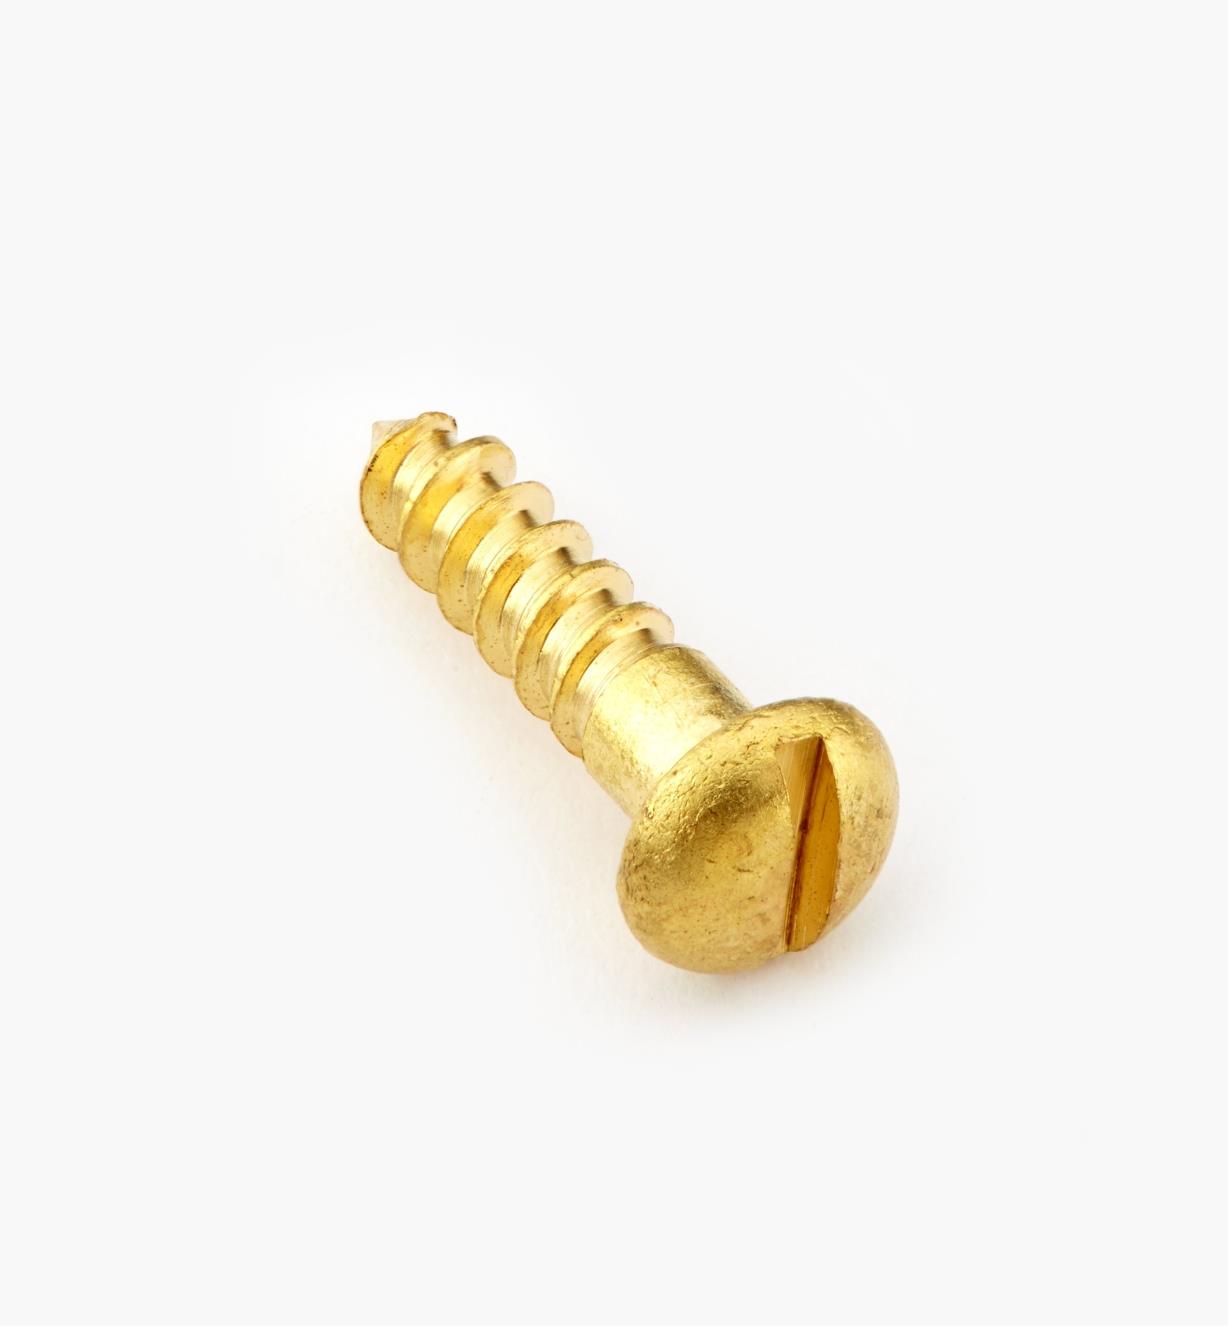 91Y0503 - #5, 1/2" Round Brass Screws, pkg. of 100